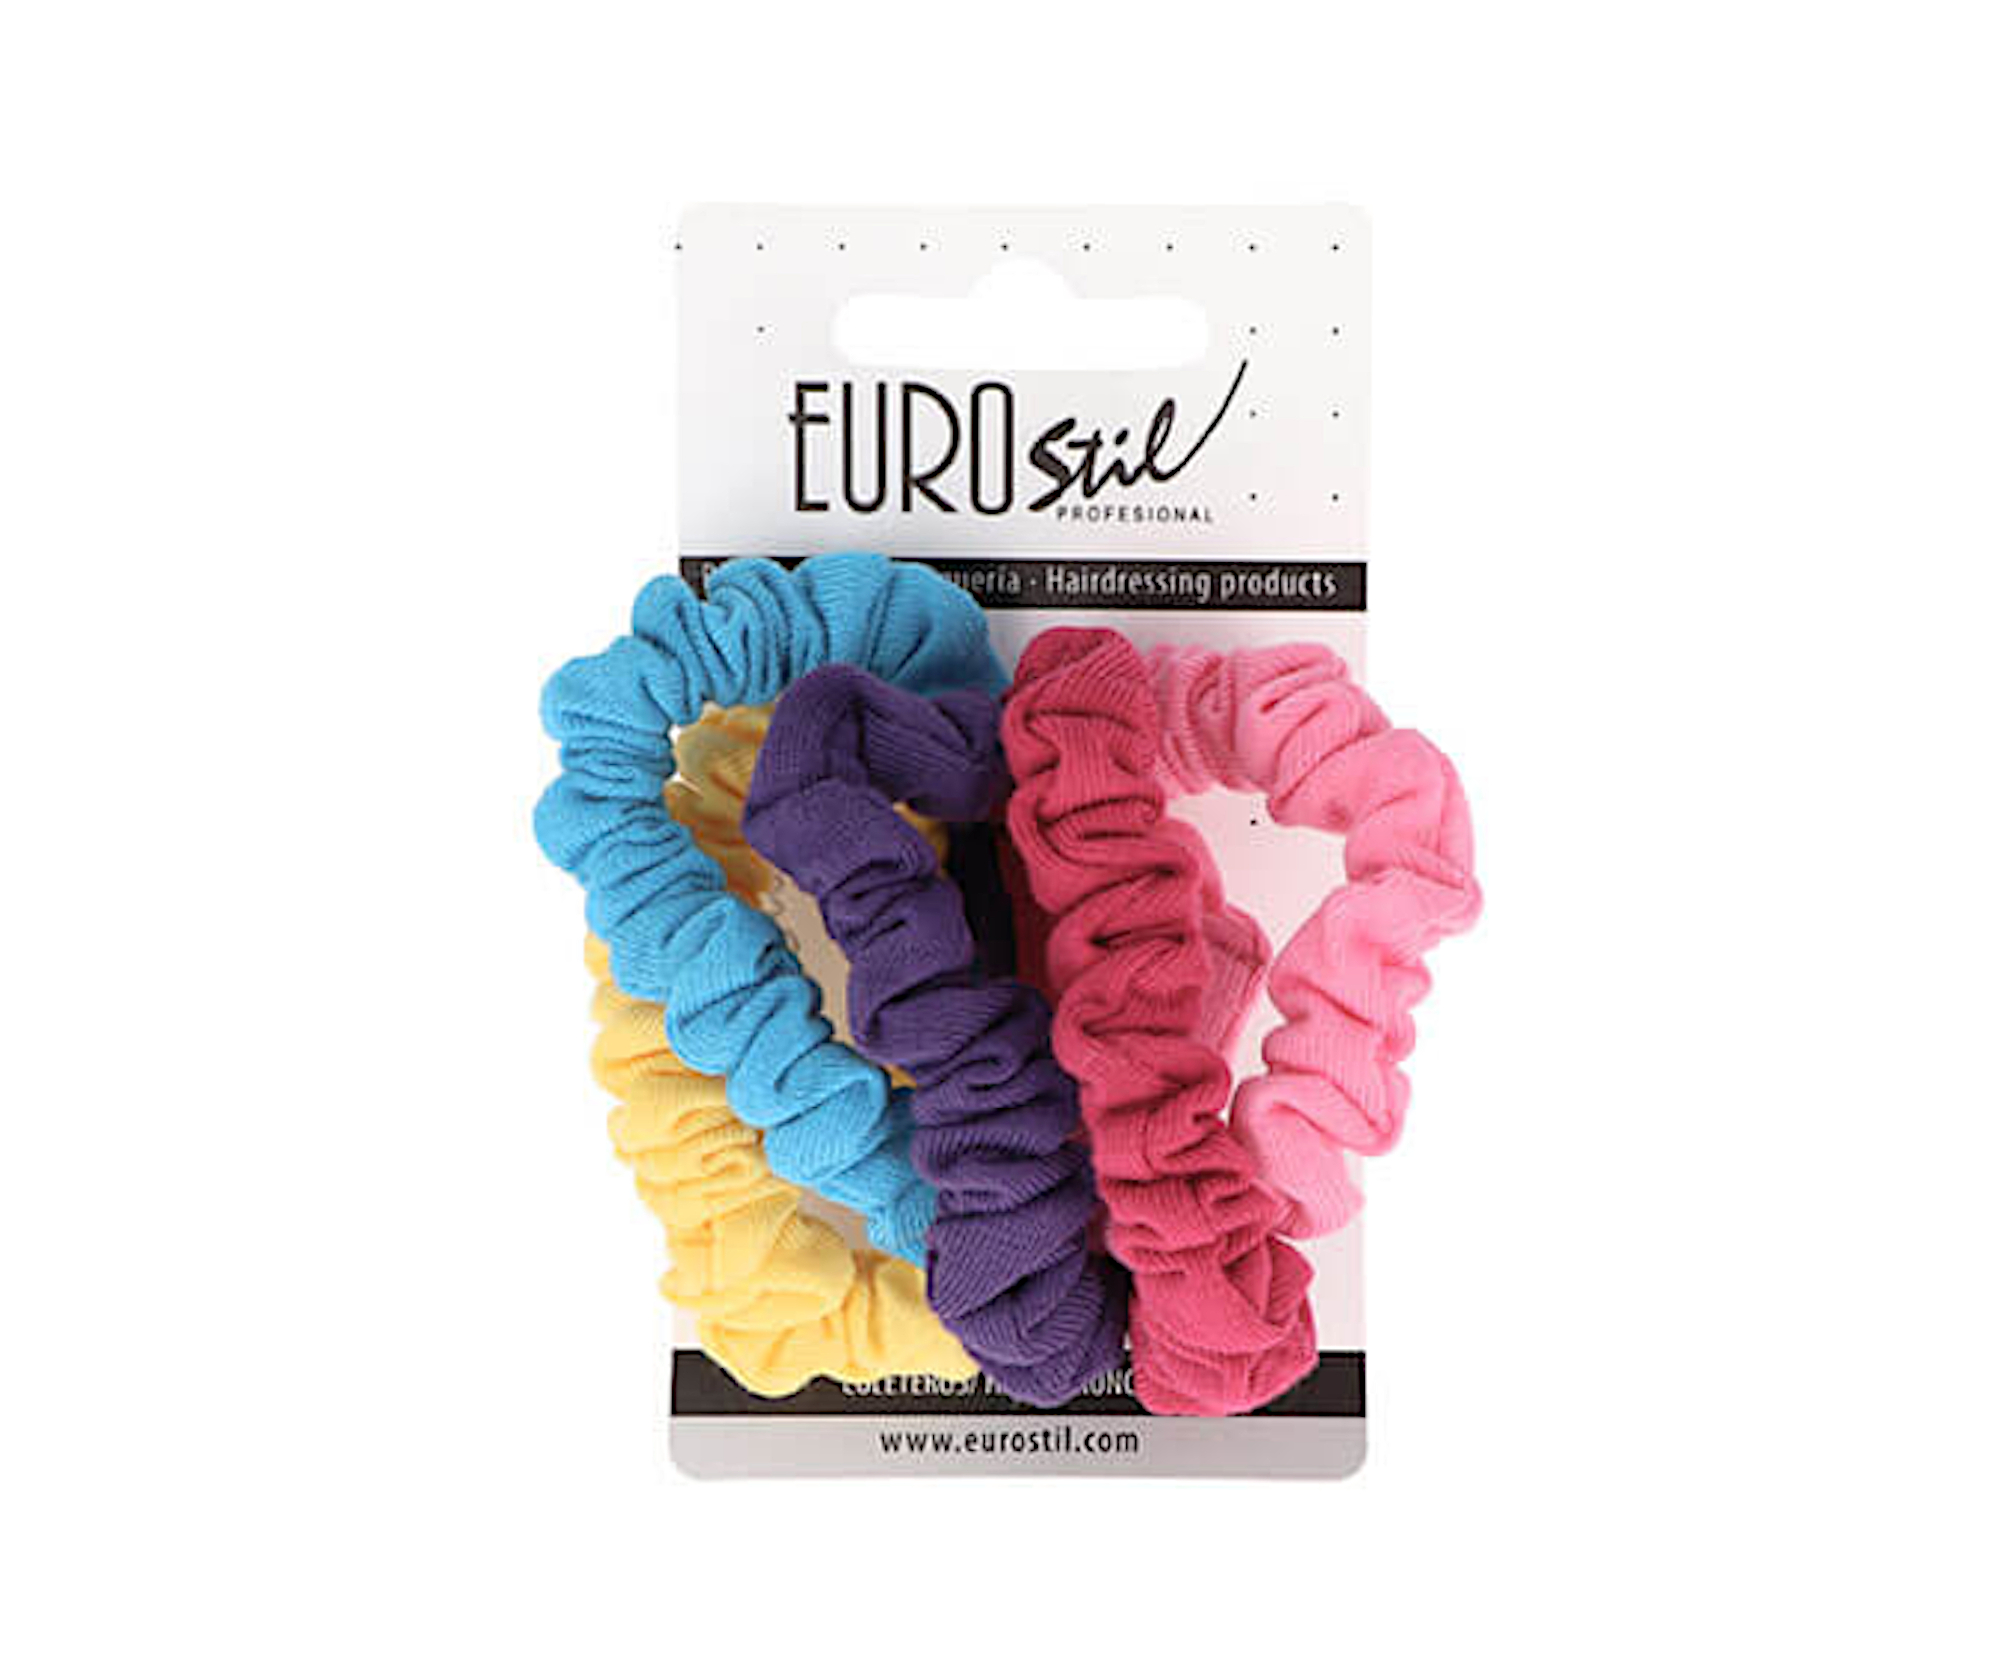 Látkové gumičky do vlasů Eurostil Profesional - barevné, 5 ks (07454) + dárek zdarma